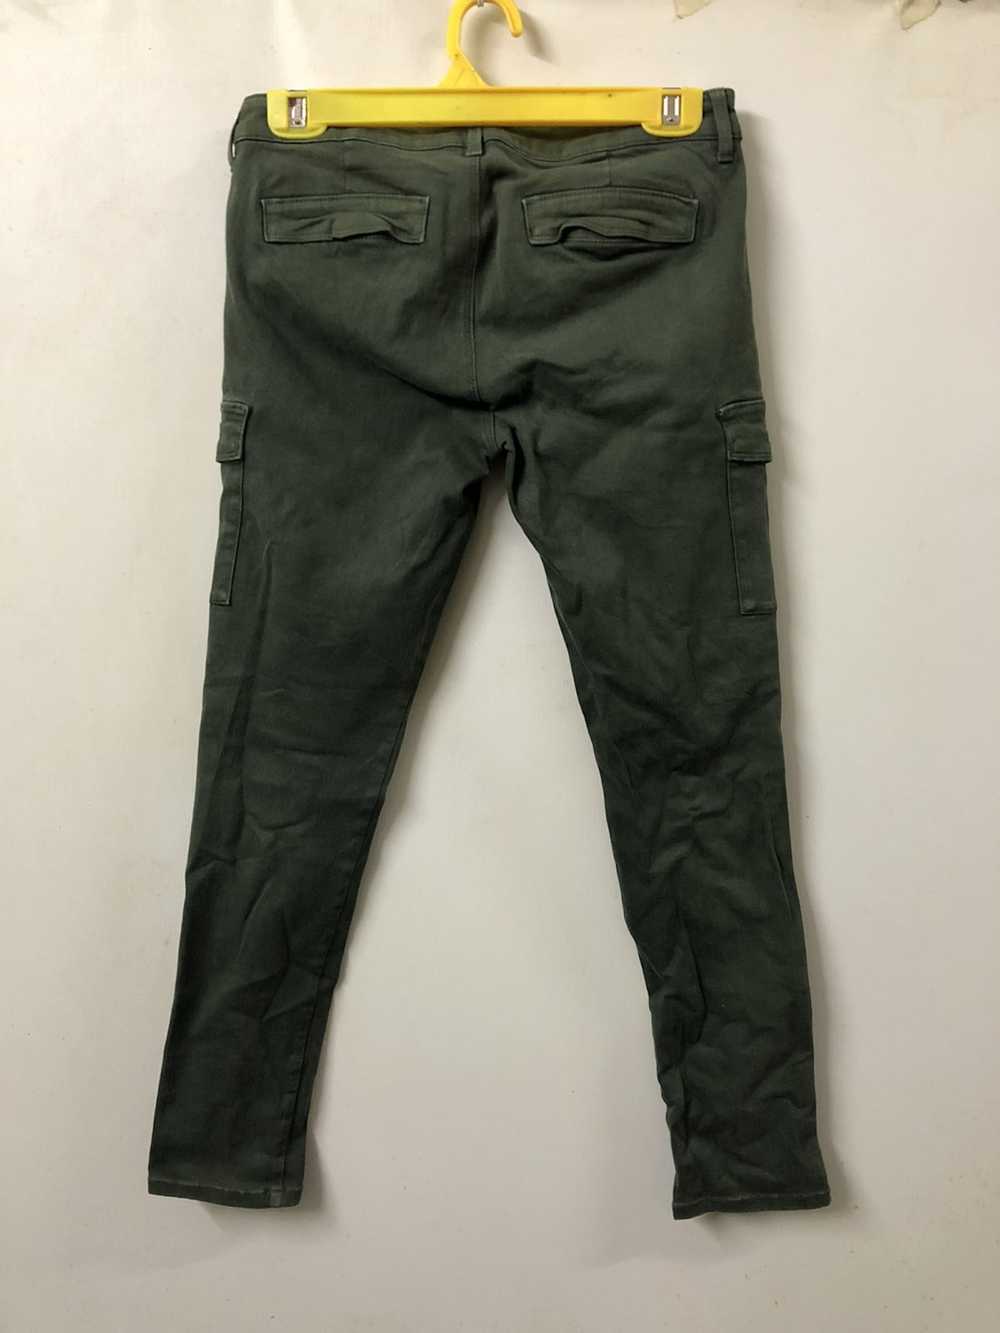 Military × Streetwear × Vintage Cargo Pants Skinn… - image 6